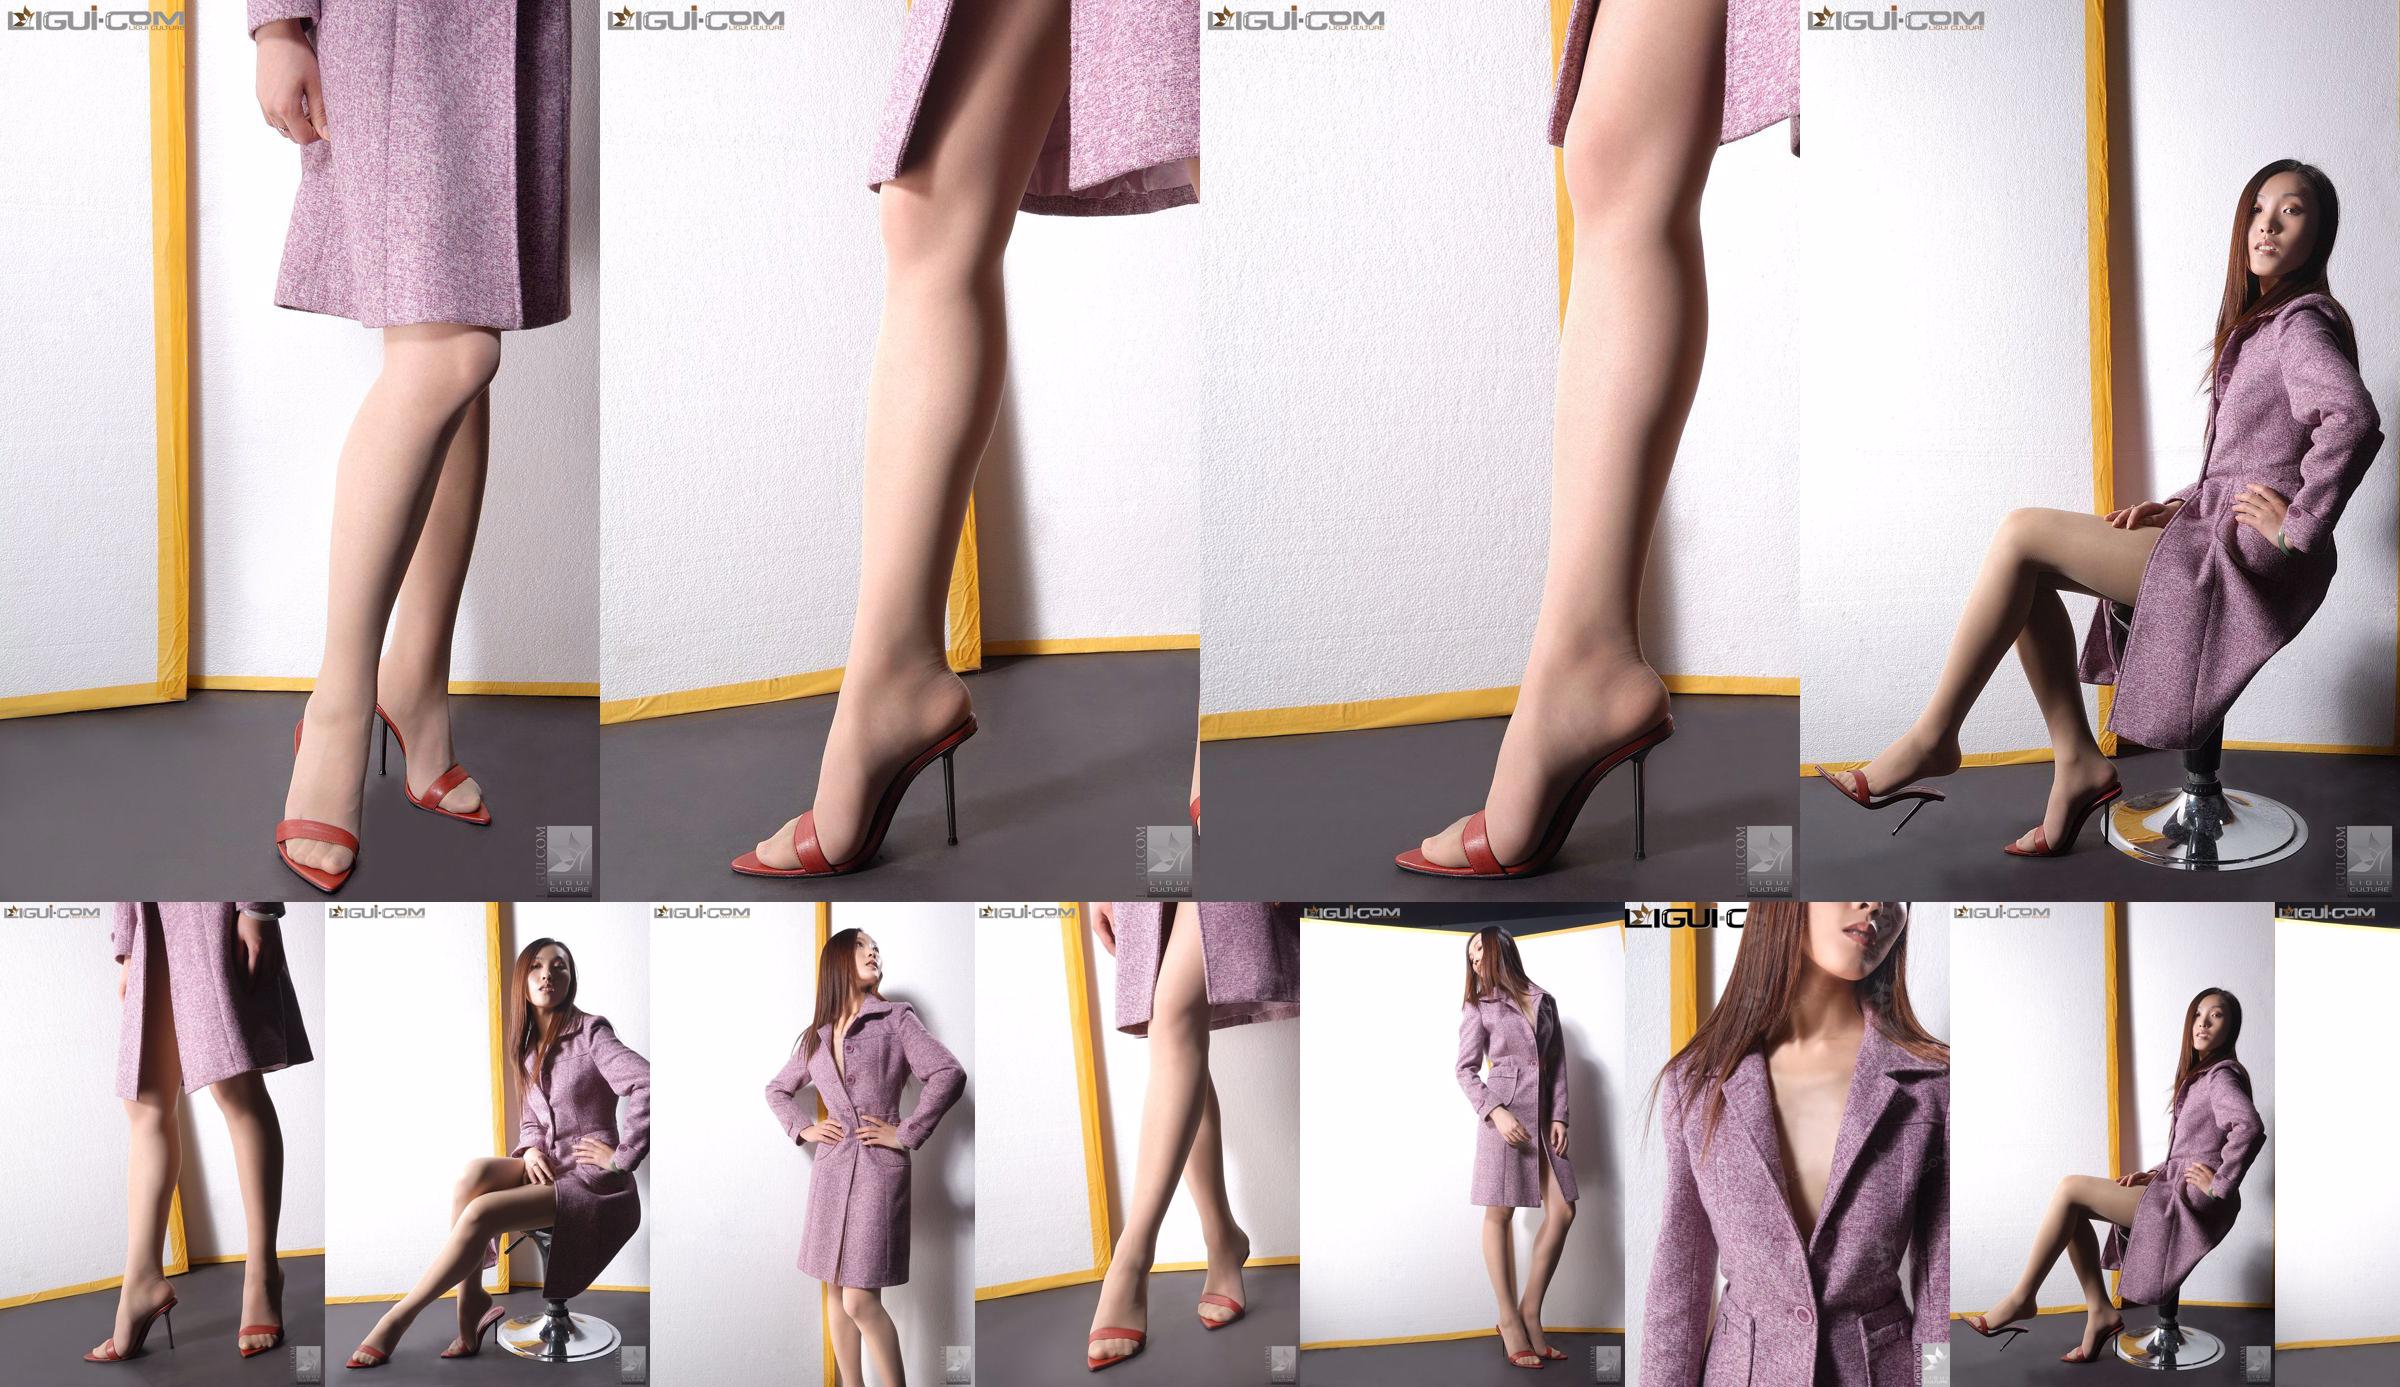 Model Zhang Ai "Eibenmädchen mit hohen Absätzen" [Ligui LiGui] Foto von schönen Beinen und Füßen No.074d59 Seite 2